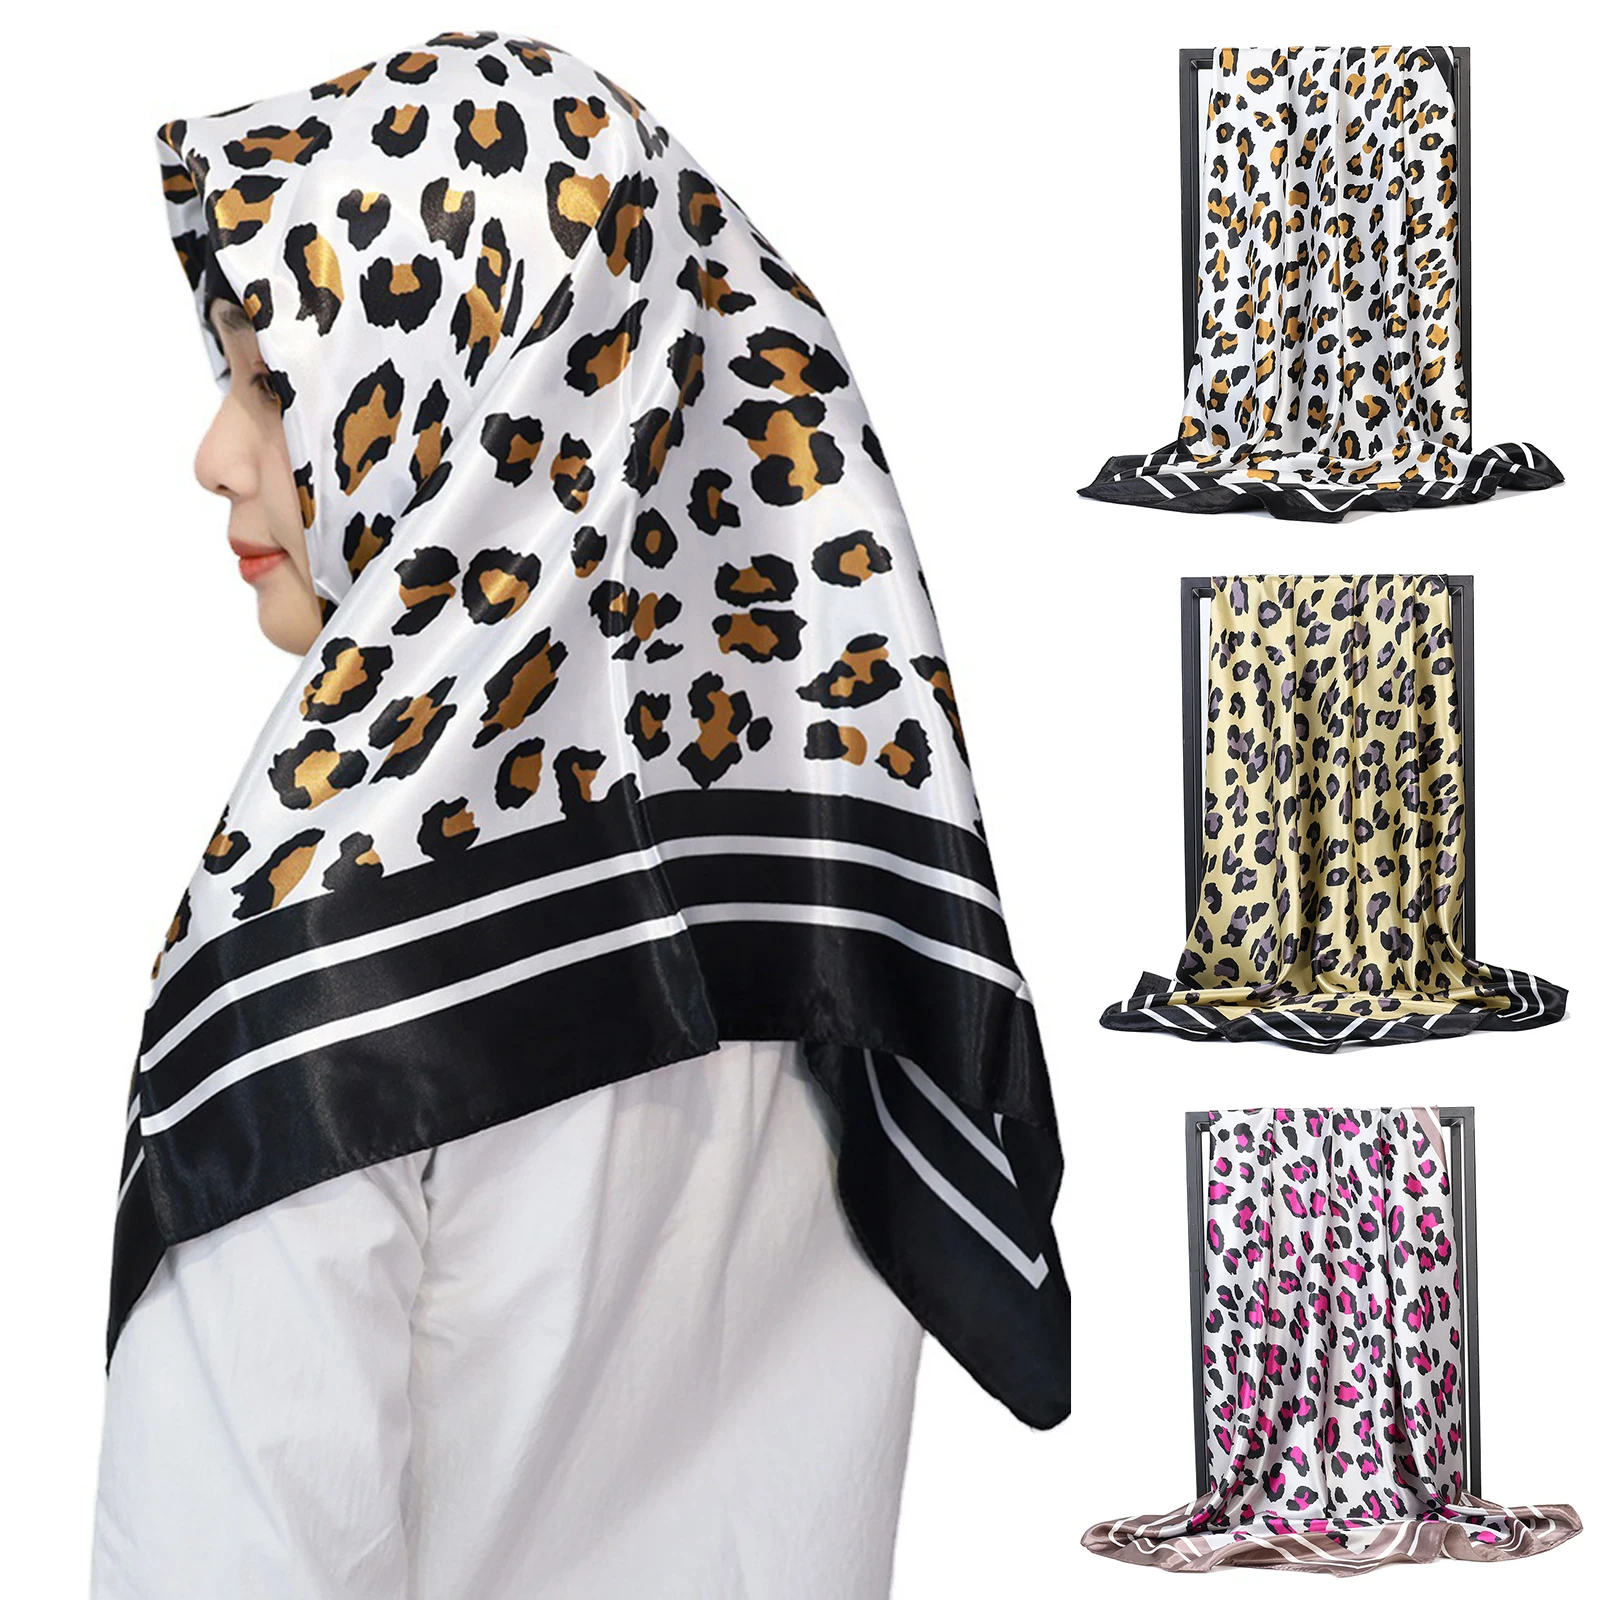 

90*90 см имитация шелка как шарф атласный платок для Для женщин мягкие волосы шарф бандана подарки ENDQ